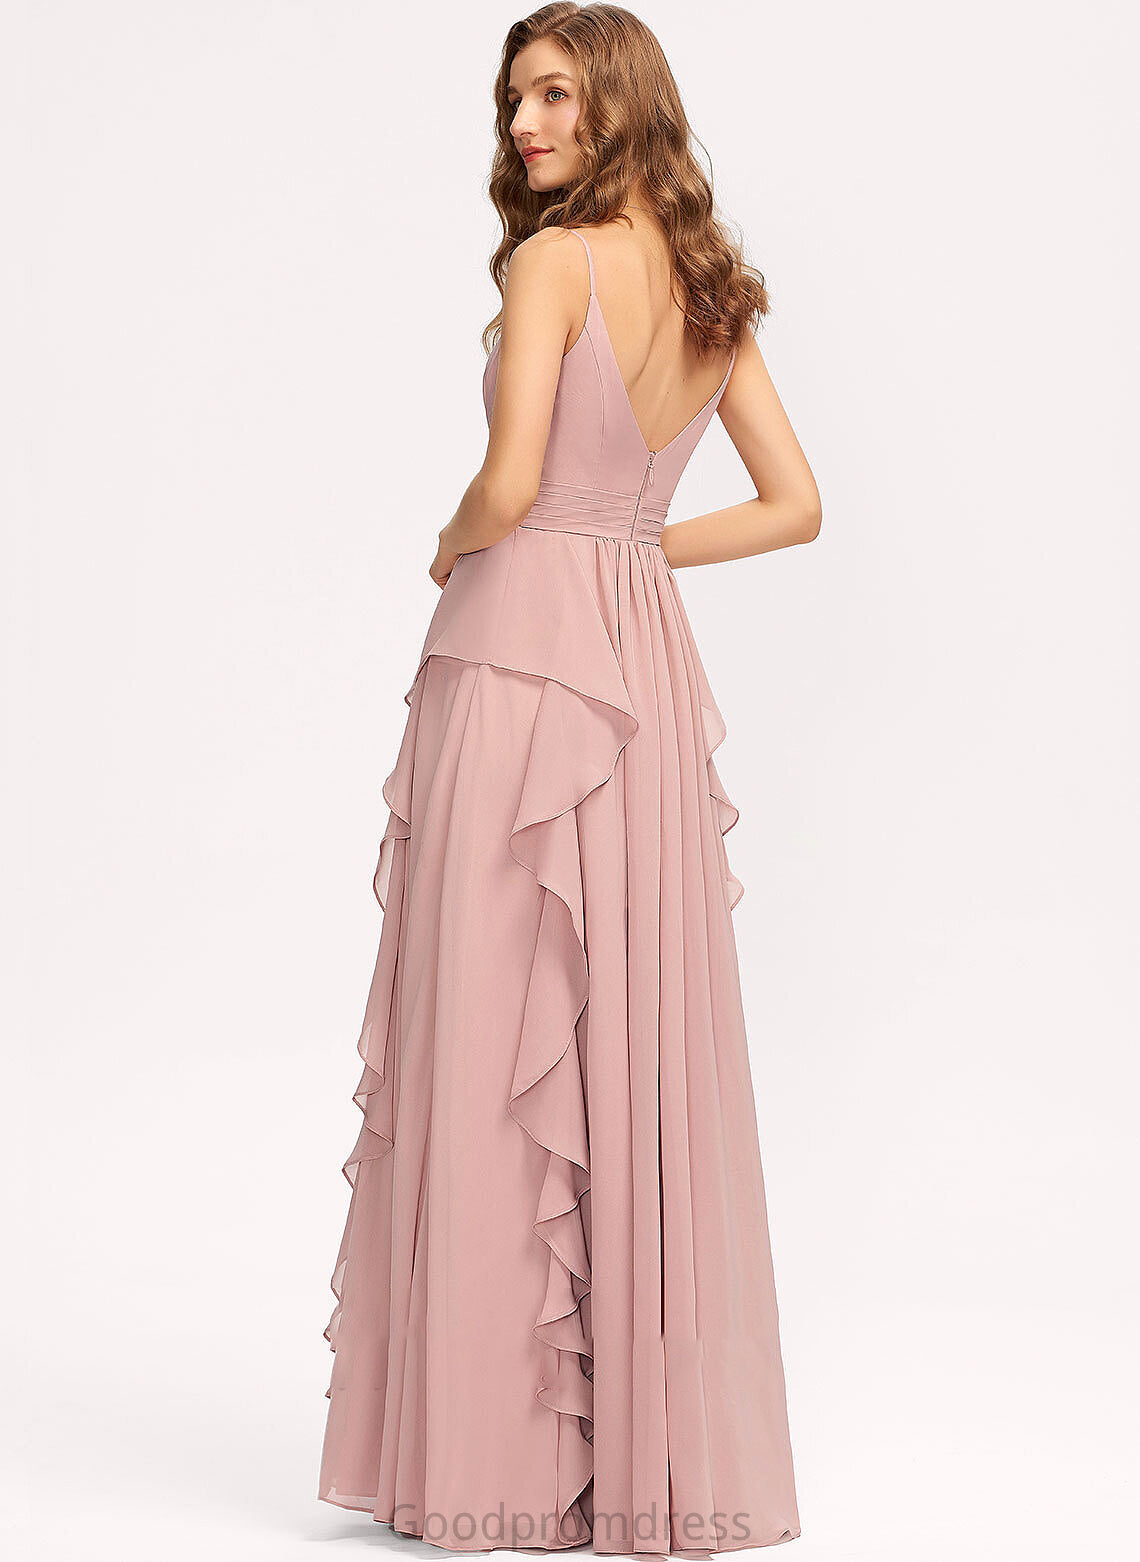 Neckline Embellishment Length Fabric Floor-Length CascadingRuffles A-Line V-neck Ruffle Silhouette Nina A-Line/Princess Bridesmaid Dresses